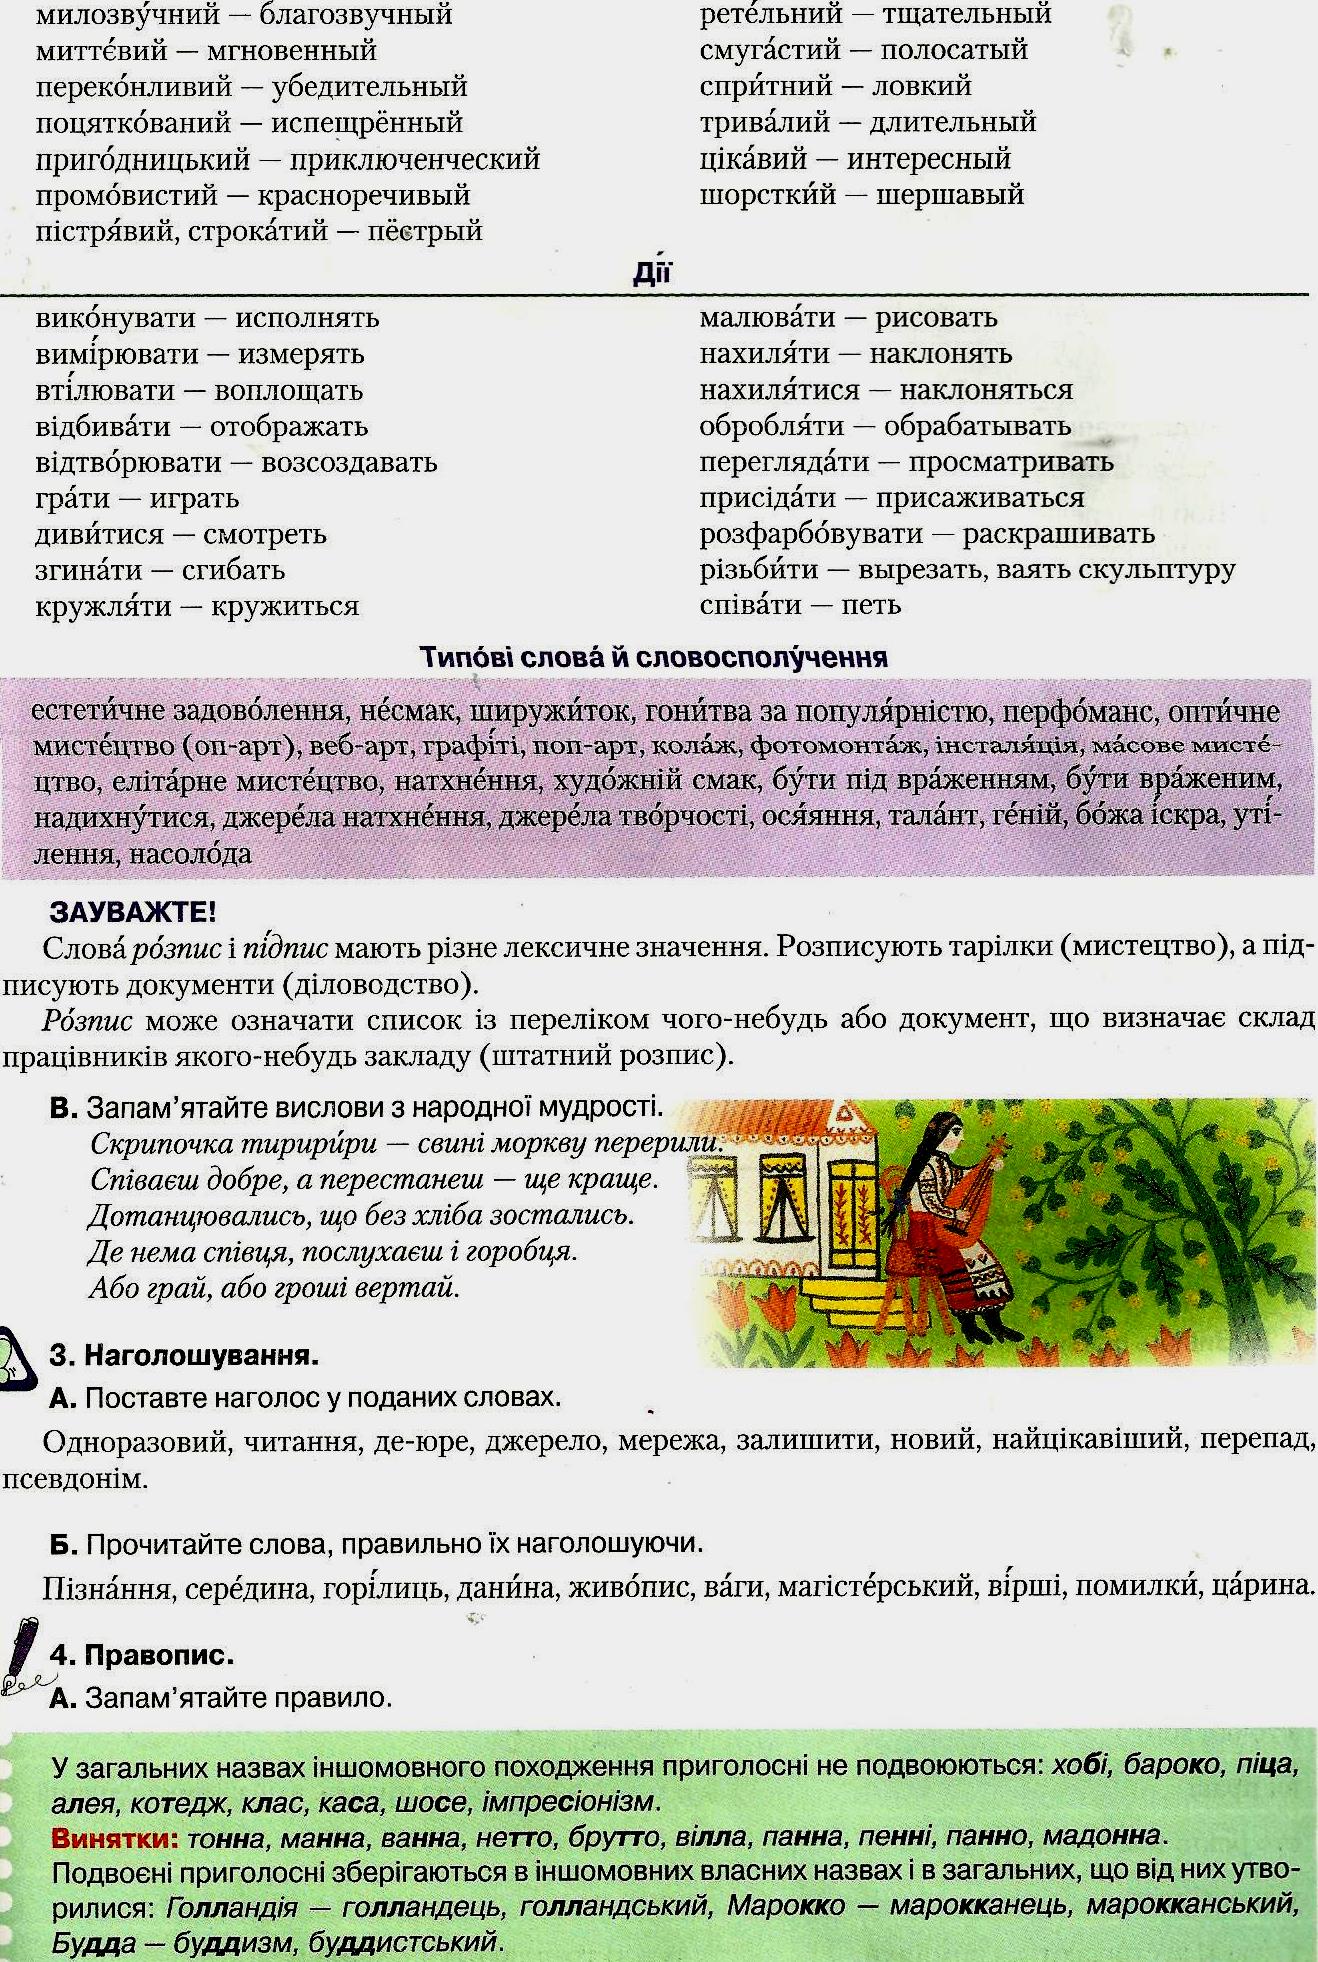 Реферат На Тему История Украинского Языка